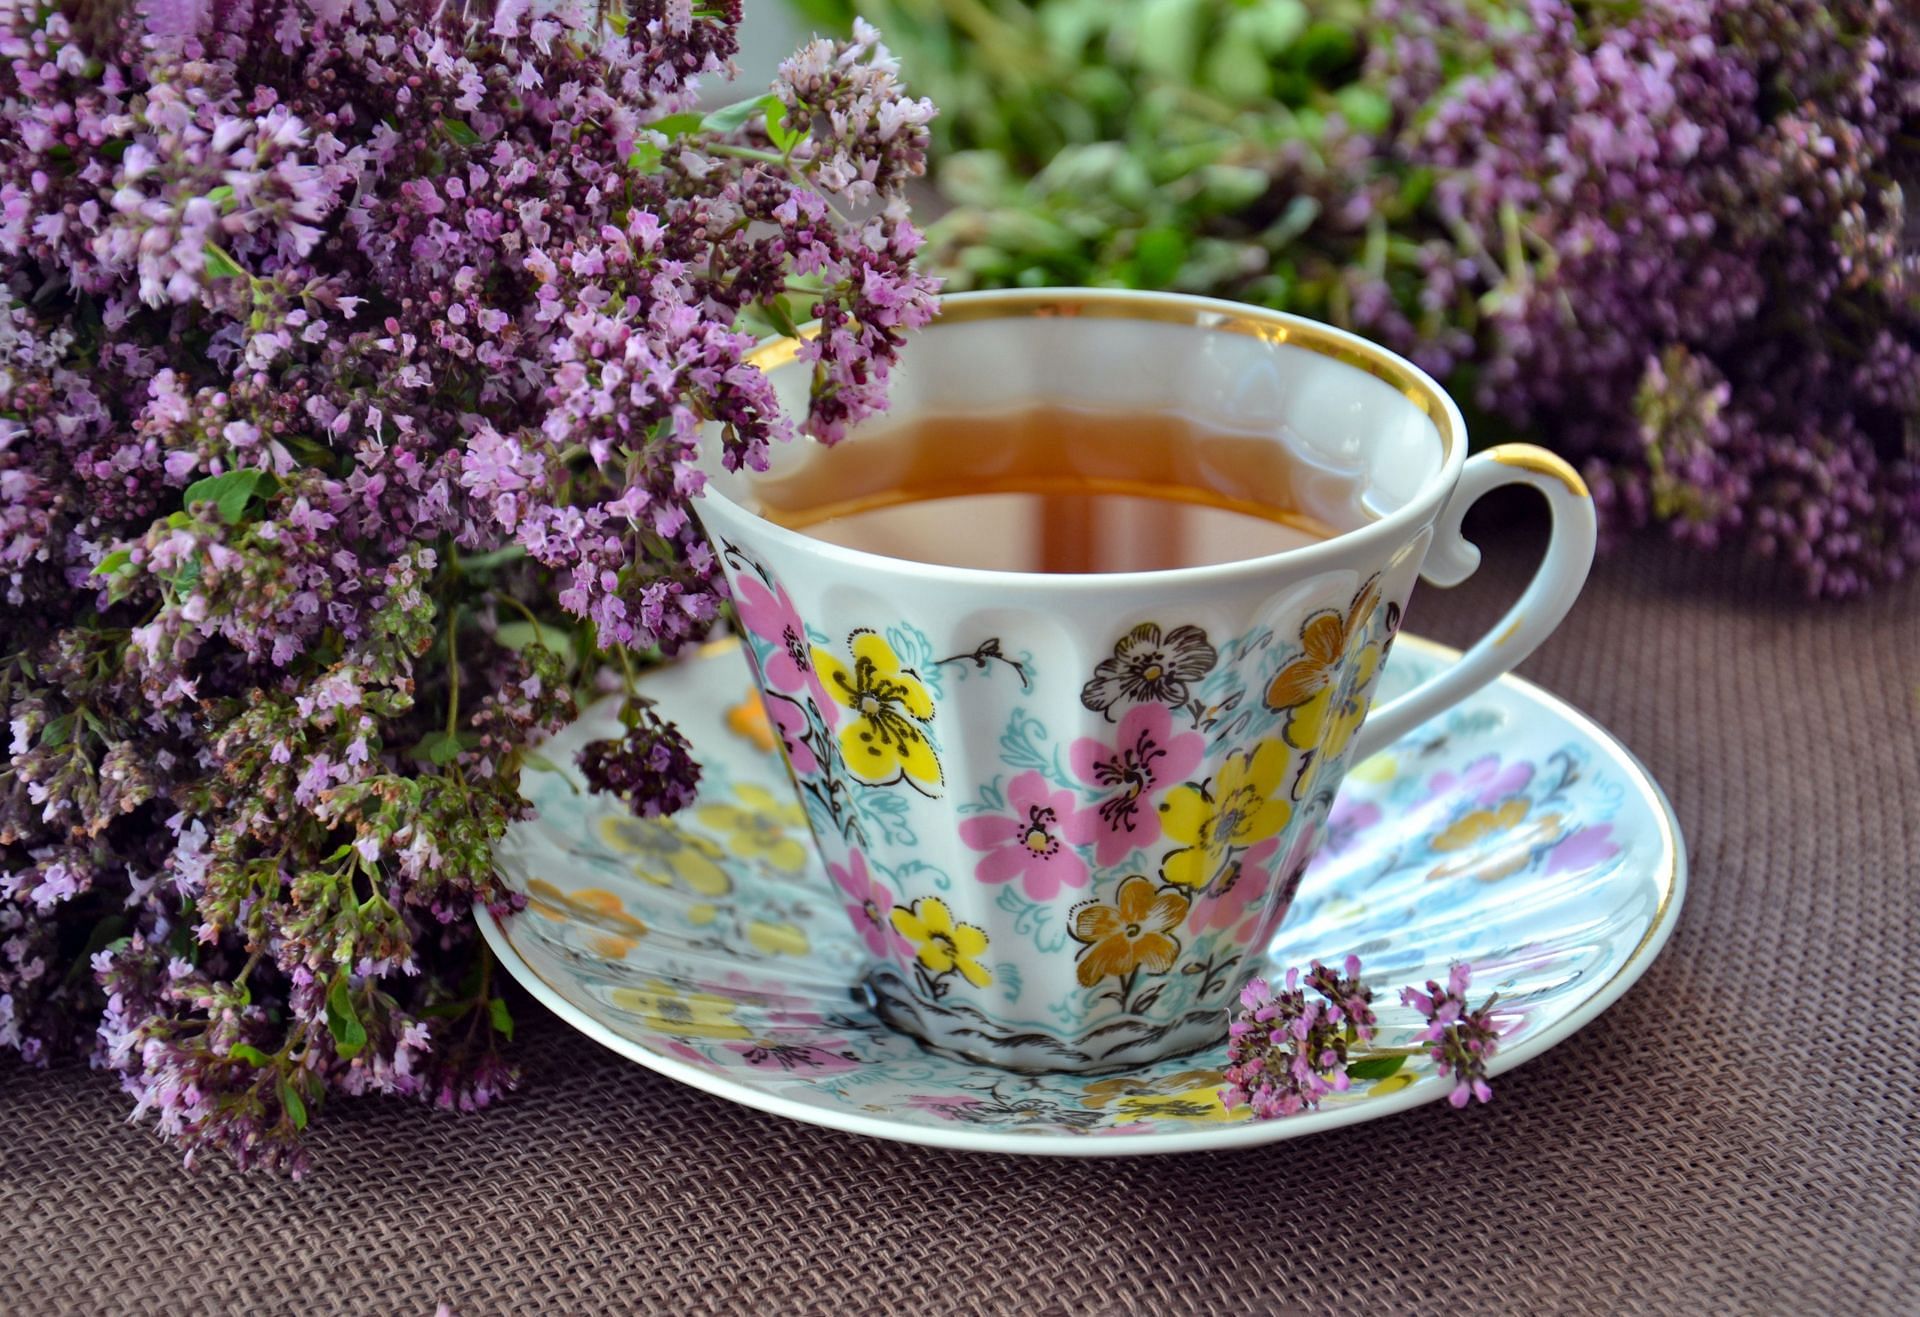 Herbal Tea (Image source/ Pexels)